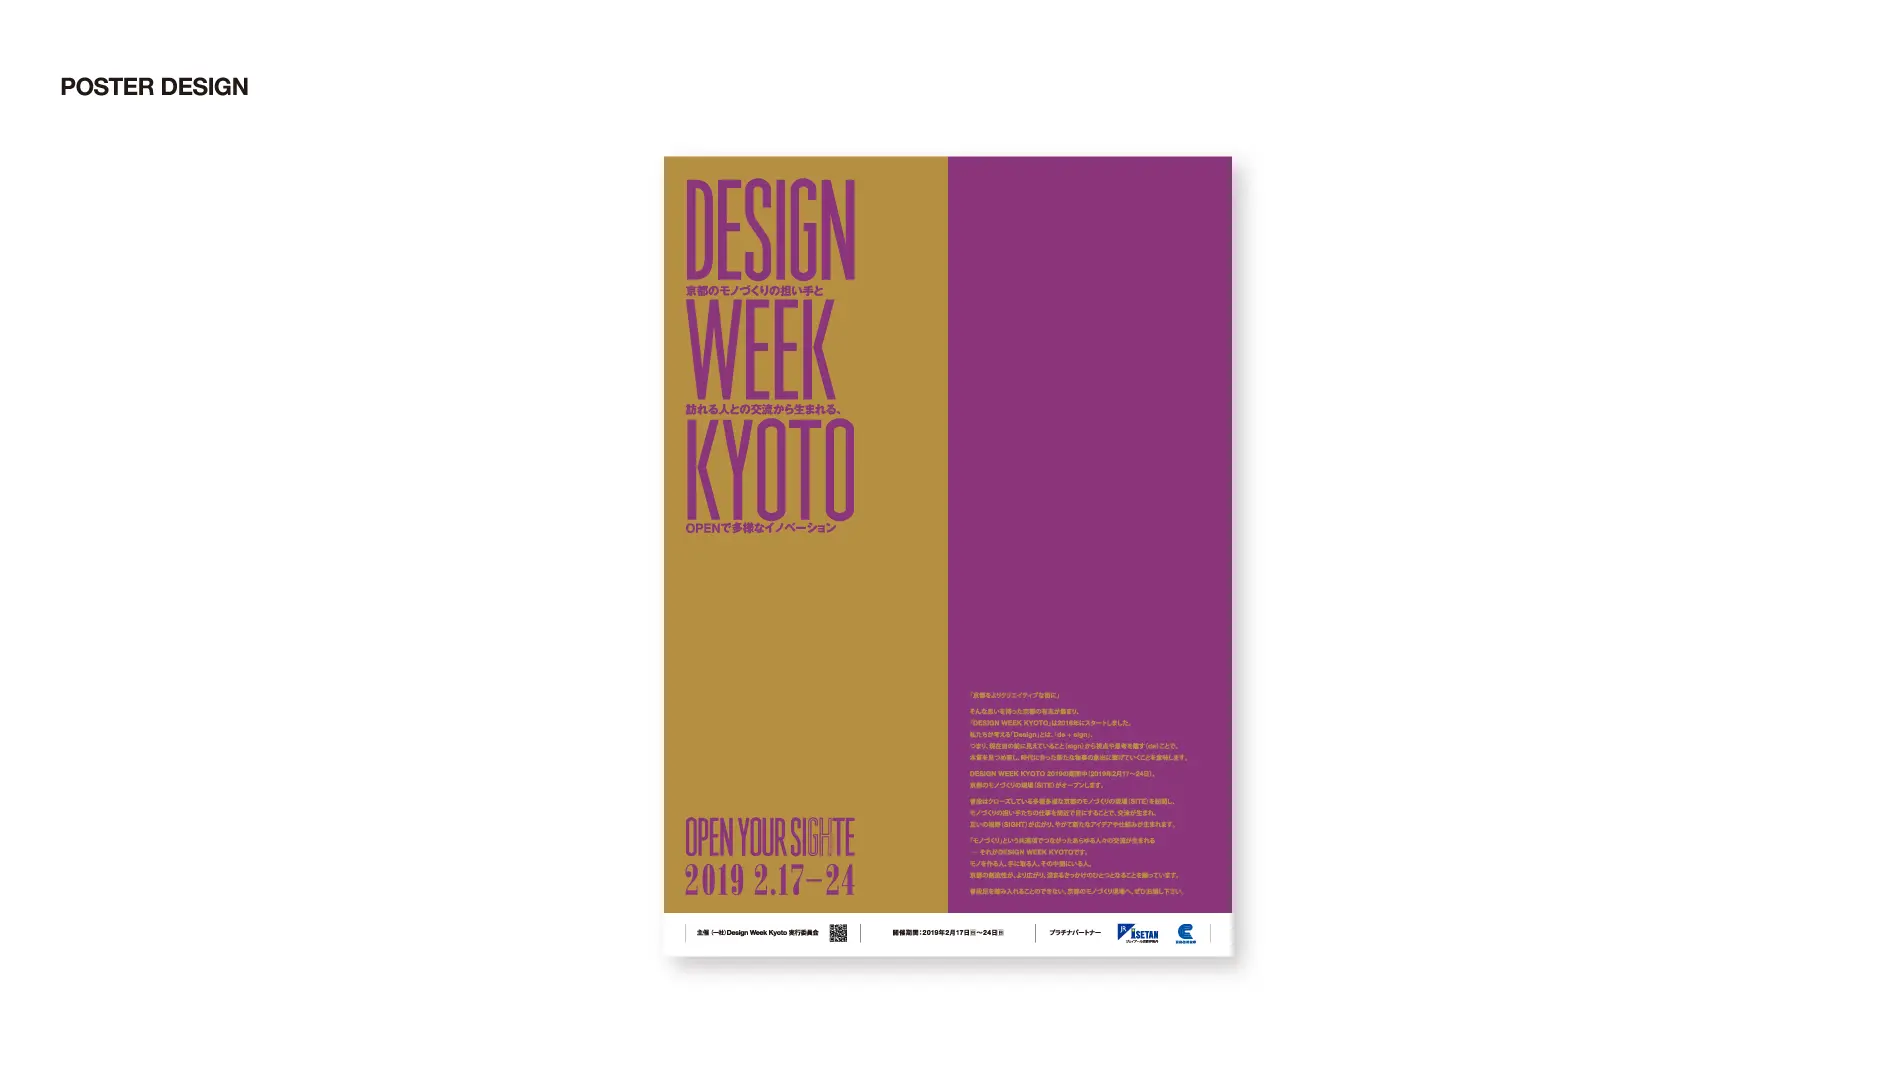 Design Week Kyoto 2019ブランディングデザイン